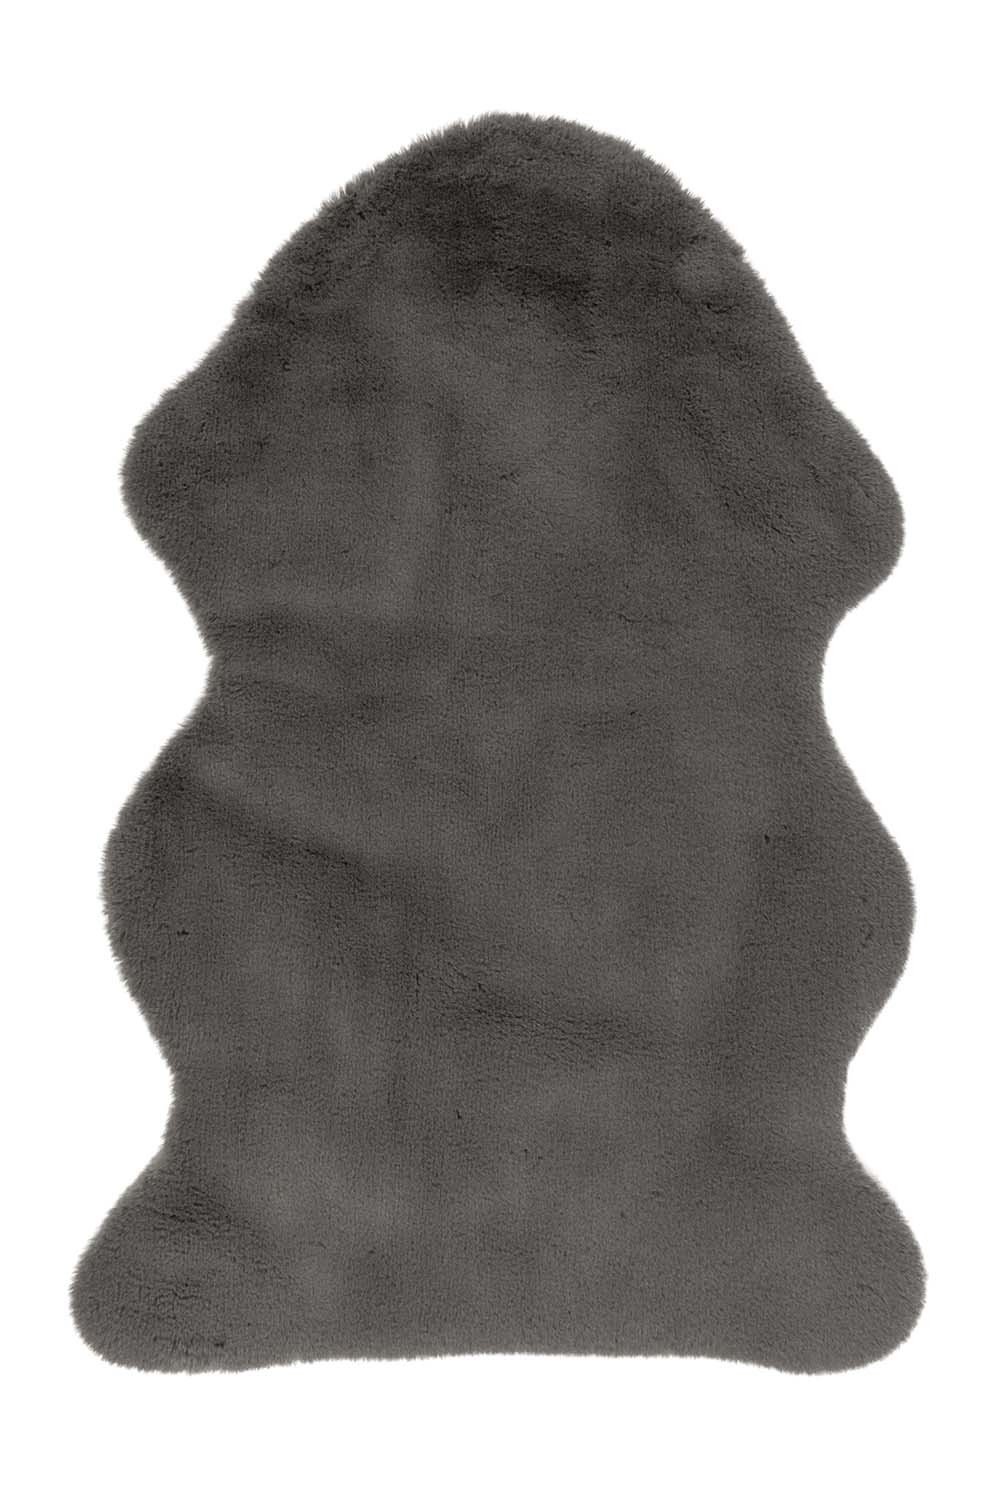 Kilimas COSY 500 Grey, 60 x 90 cm, 100 % poliesterio - 1